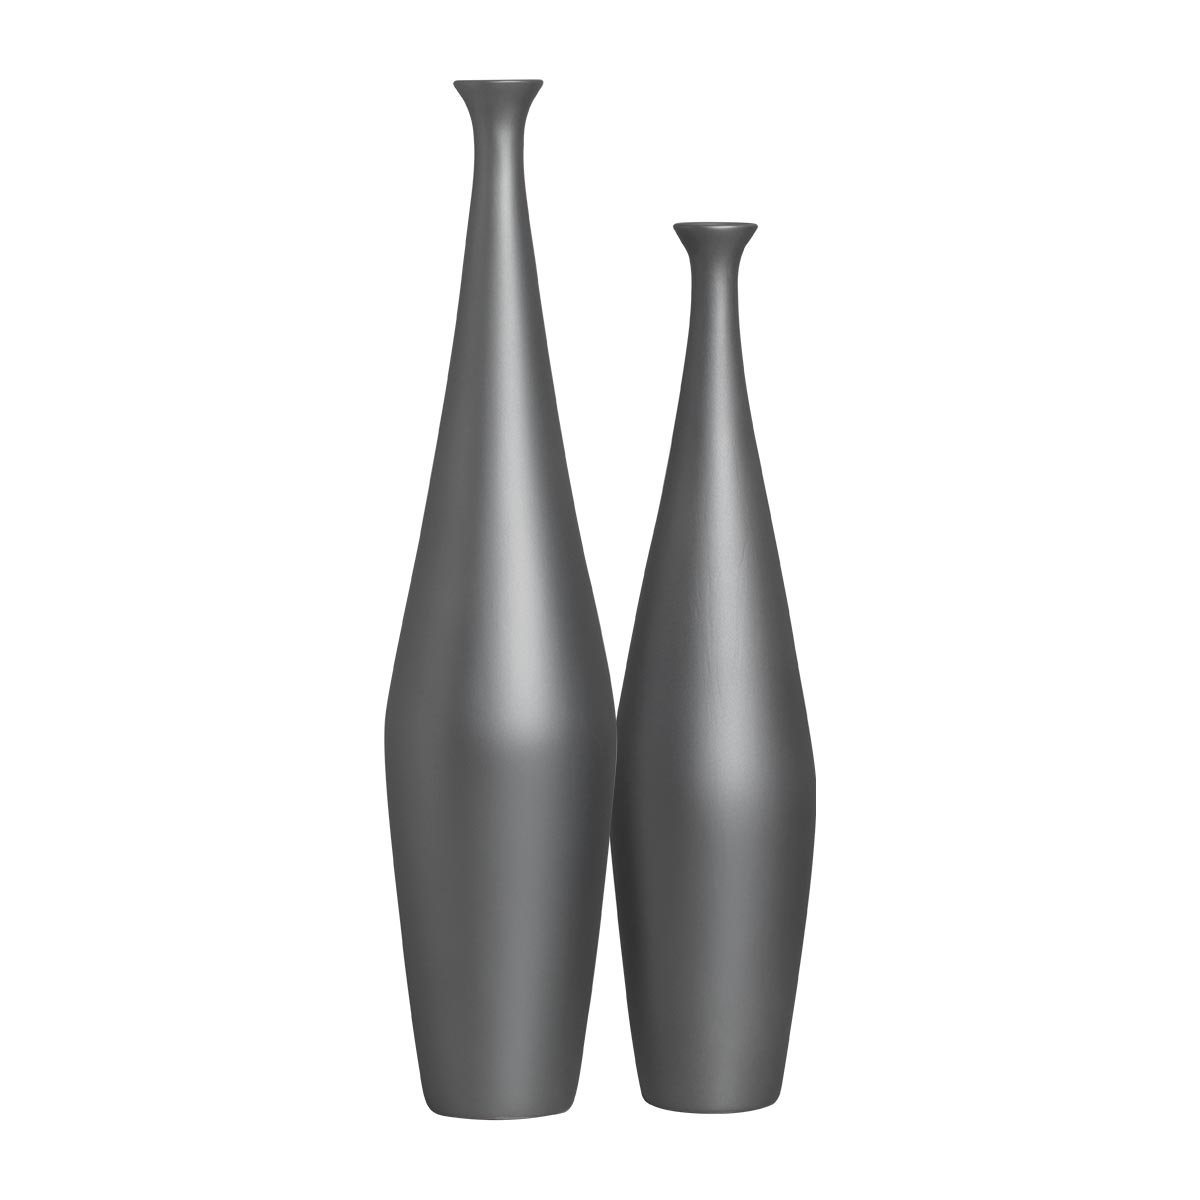 Dupla Vaso de Chão Cinza para Decoração de Cerâmica Faenza Chumbo - 1